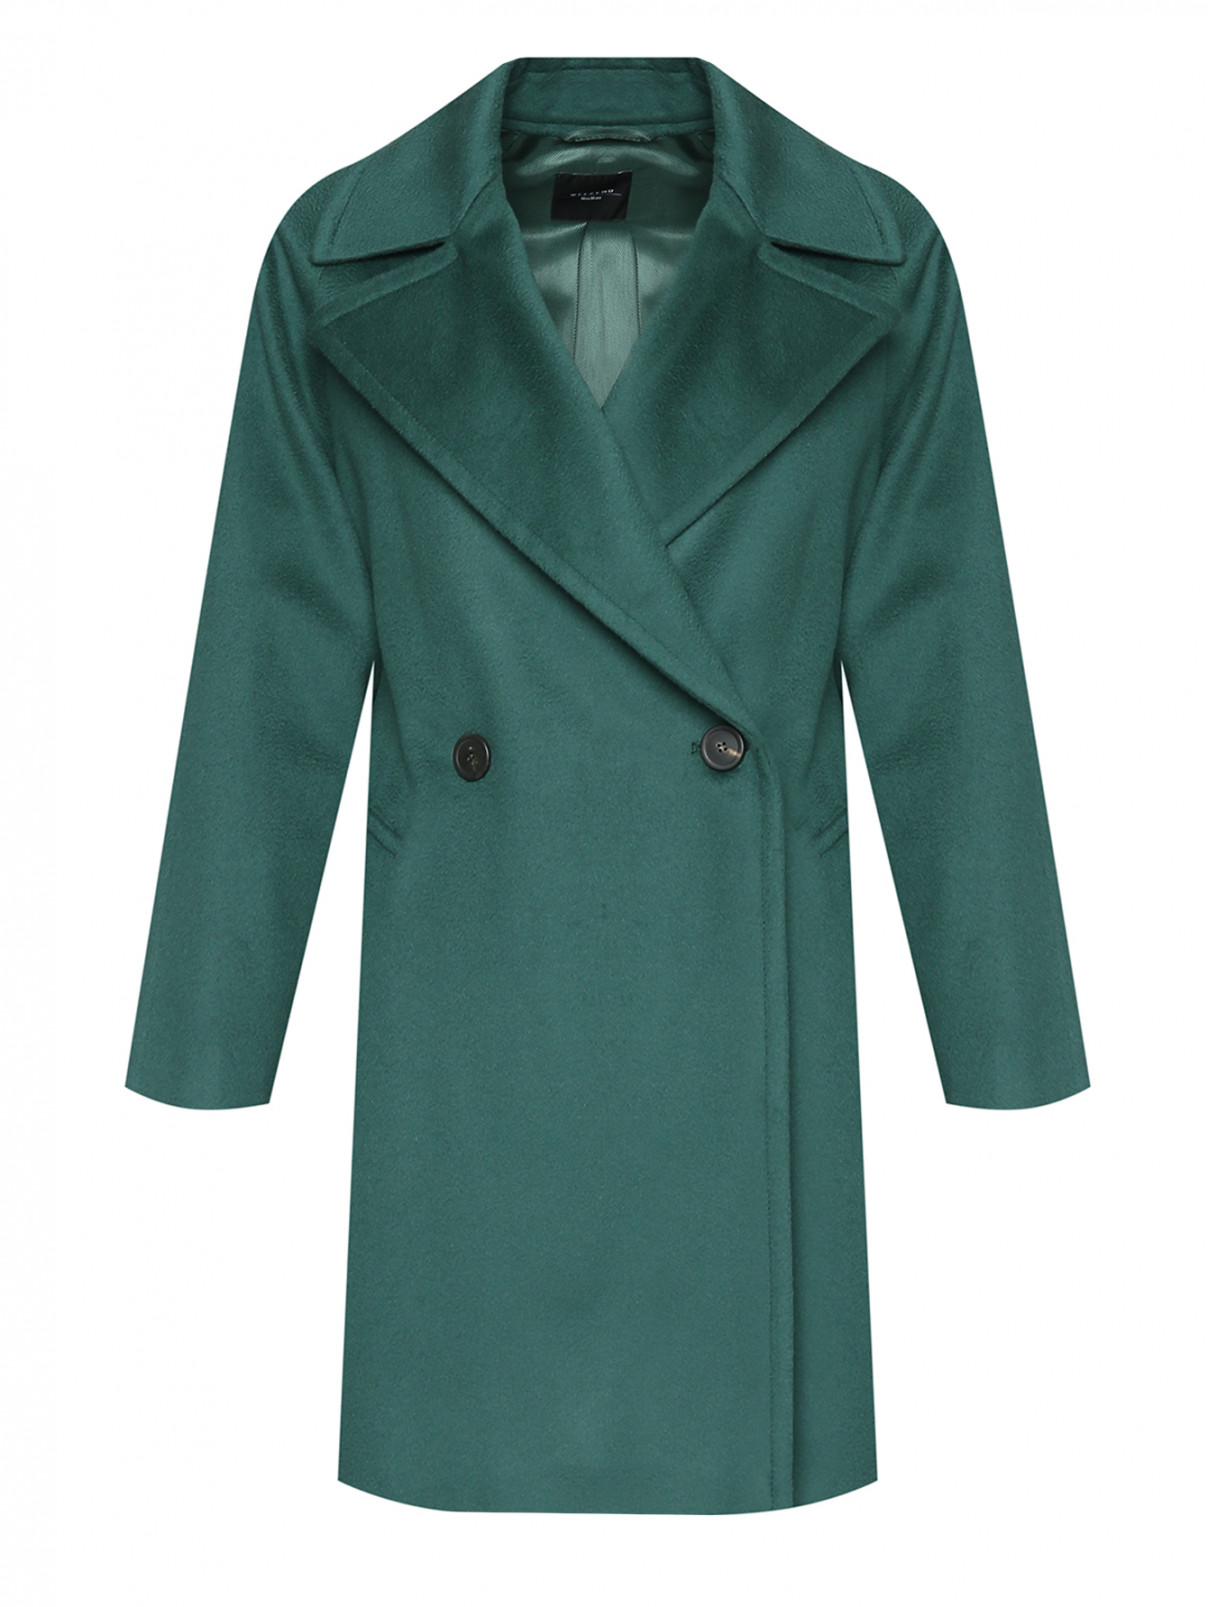 Двубортное пальто из шерсти с карманами Weekend Max Mara  –  Общий вид  – Цвет:  Зеленый